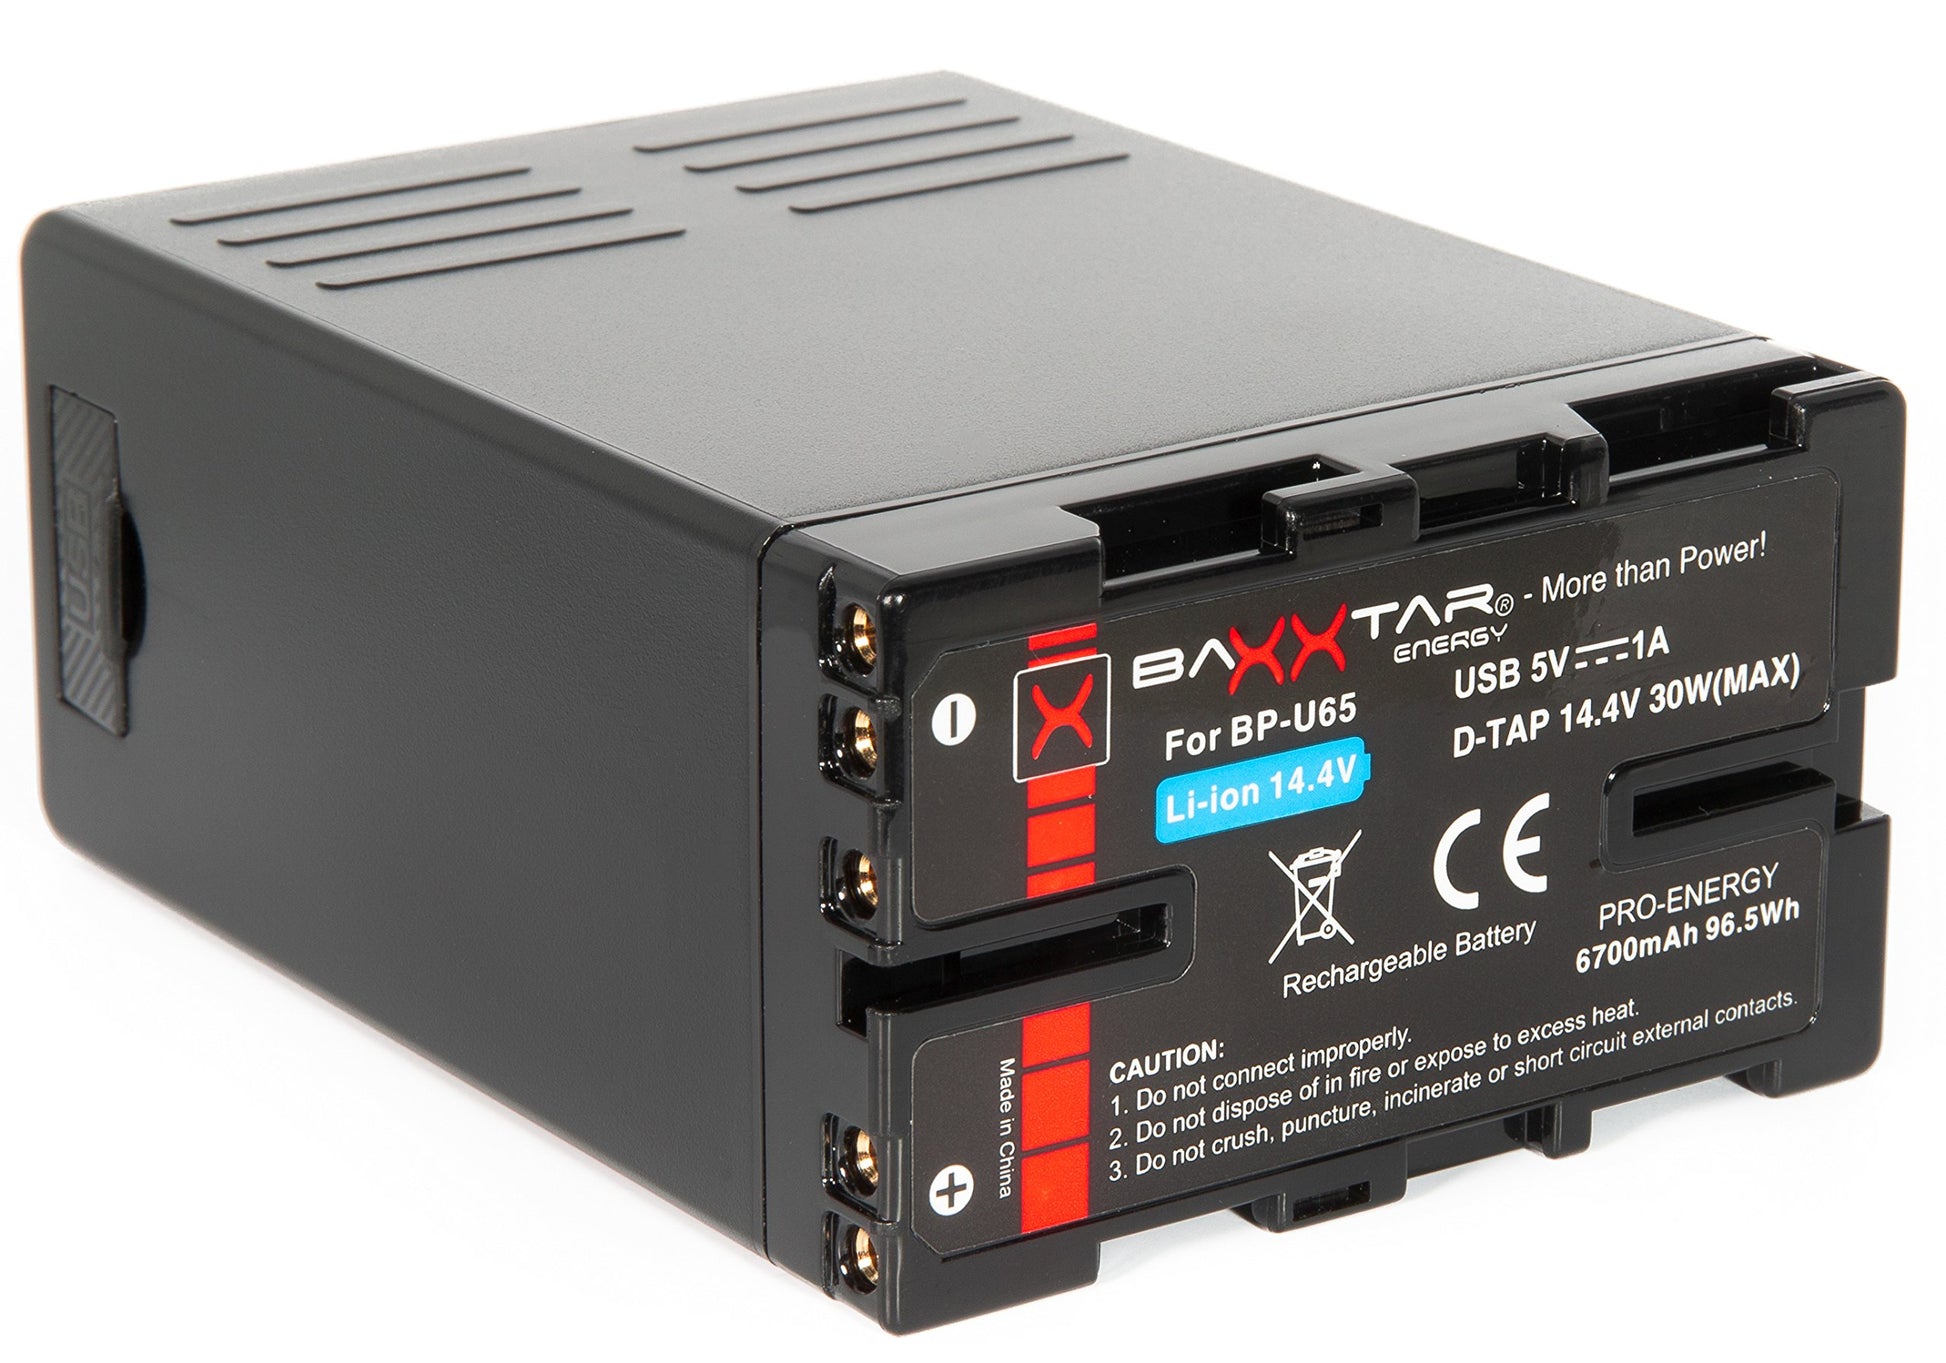 Baxxtar Pro - Battery for Sony BP-U65 BP-U60 (6700mAh) -